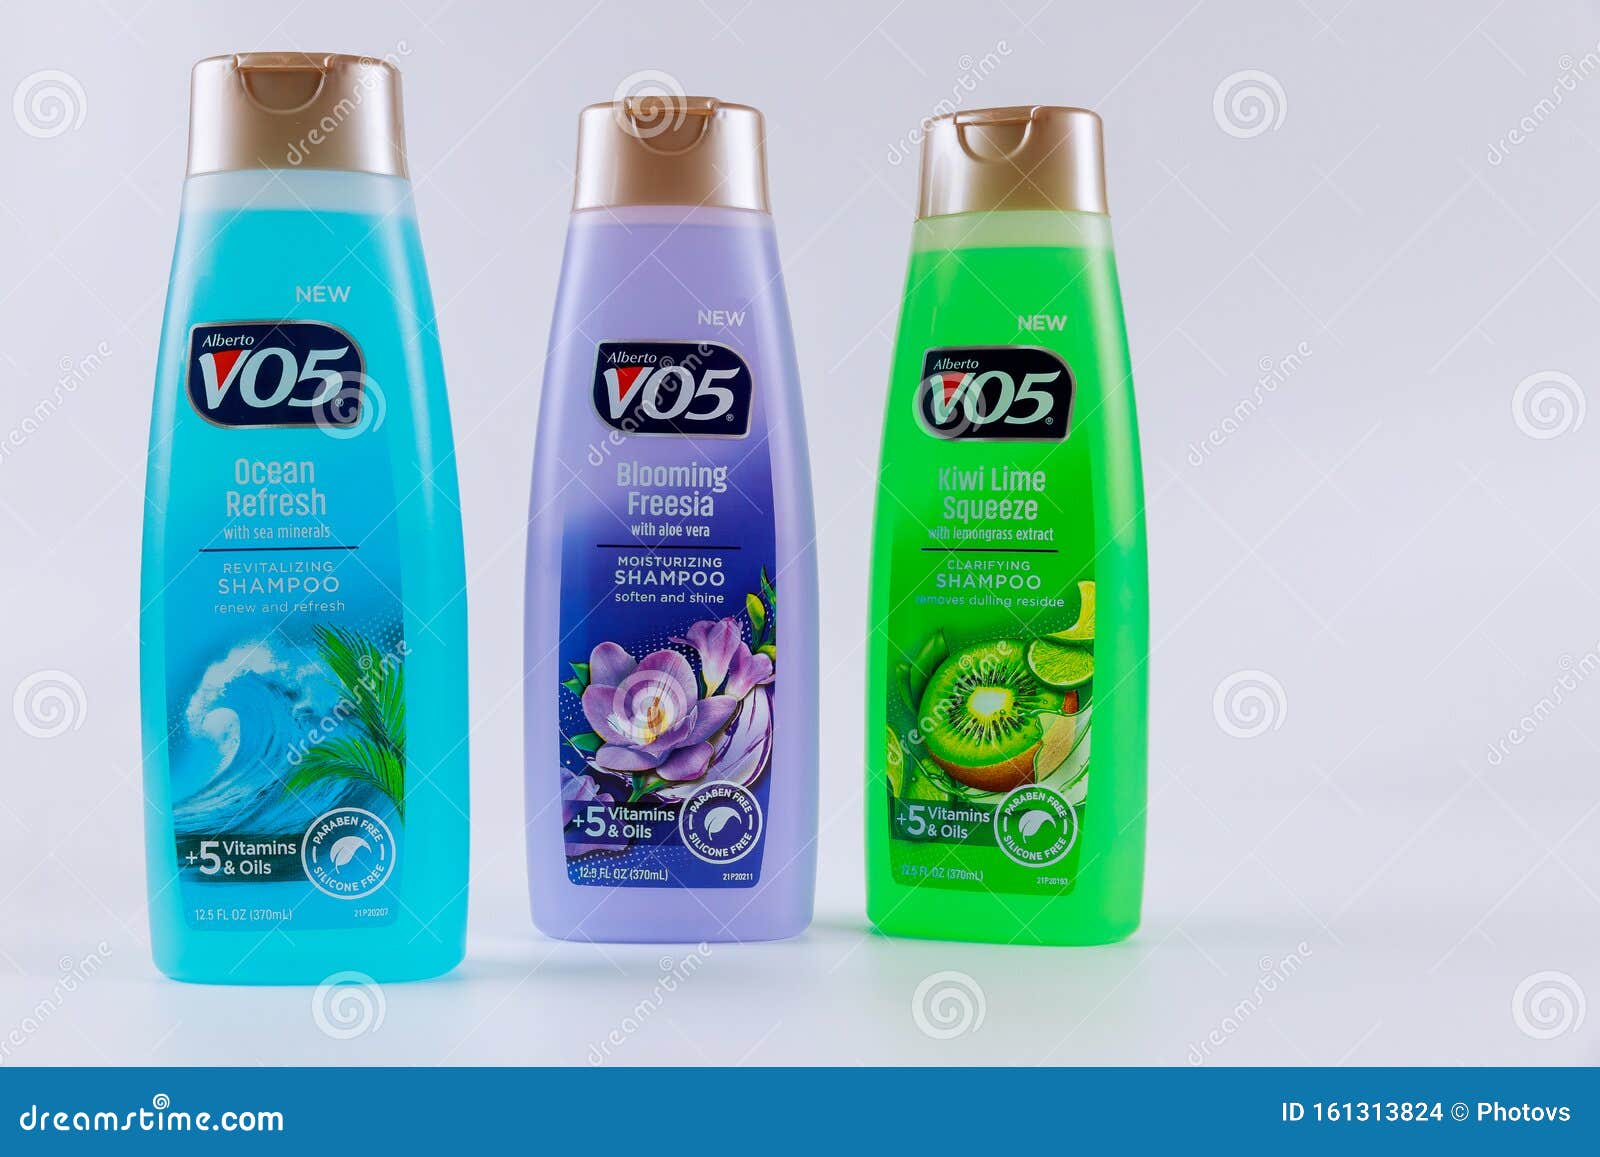 vo5 szampon